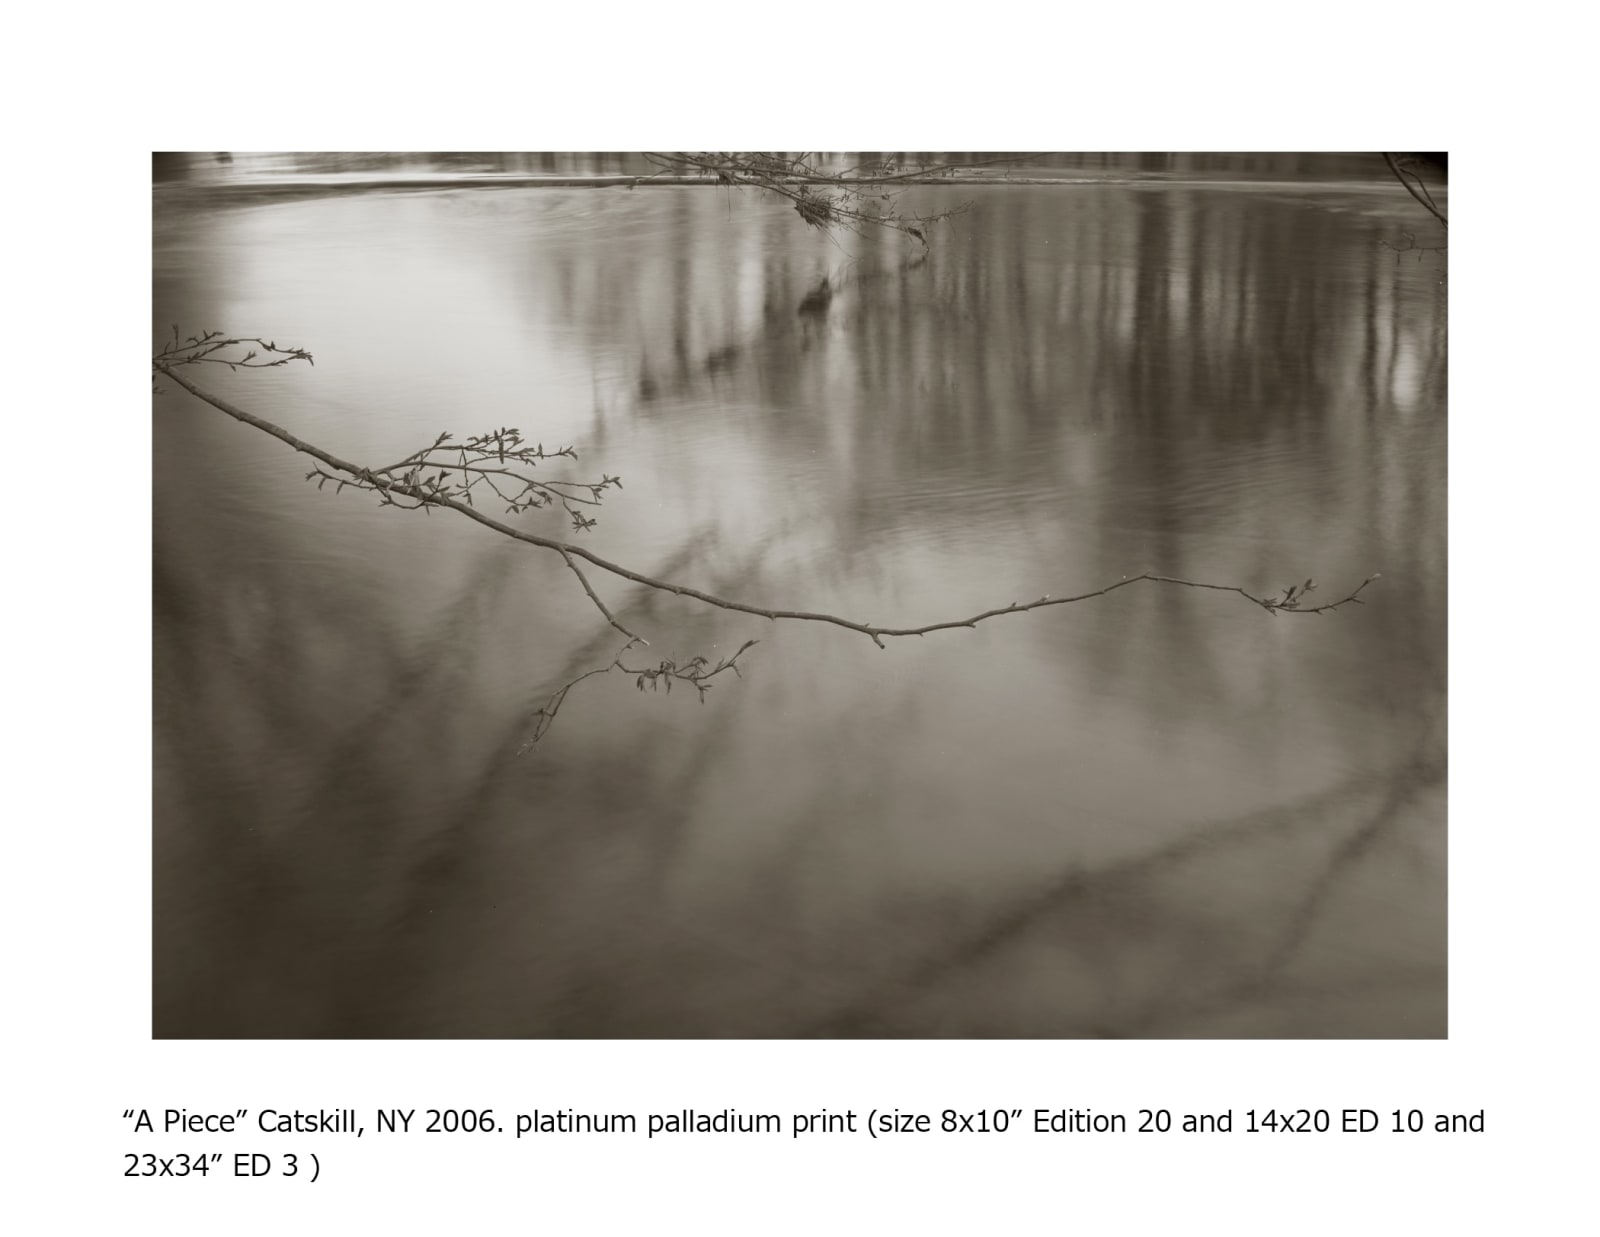 Koichiro Kurita, A Piece, Catskill, New York, 2003